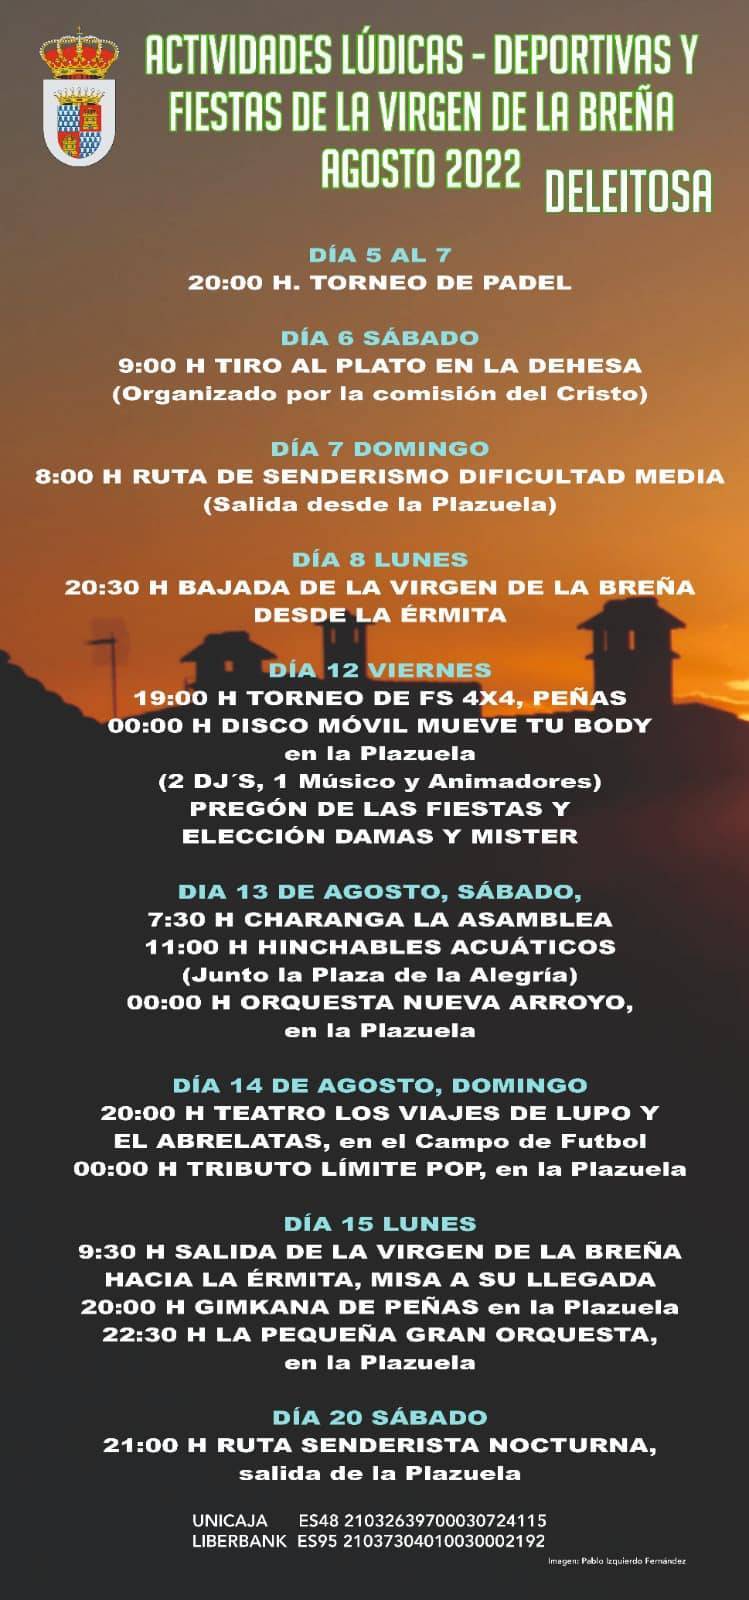 Actividades lúdicas-deportivas y fiestas de la Virgen de la Breña (2022) - Deleitosa (Cáceres) 1